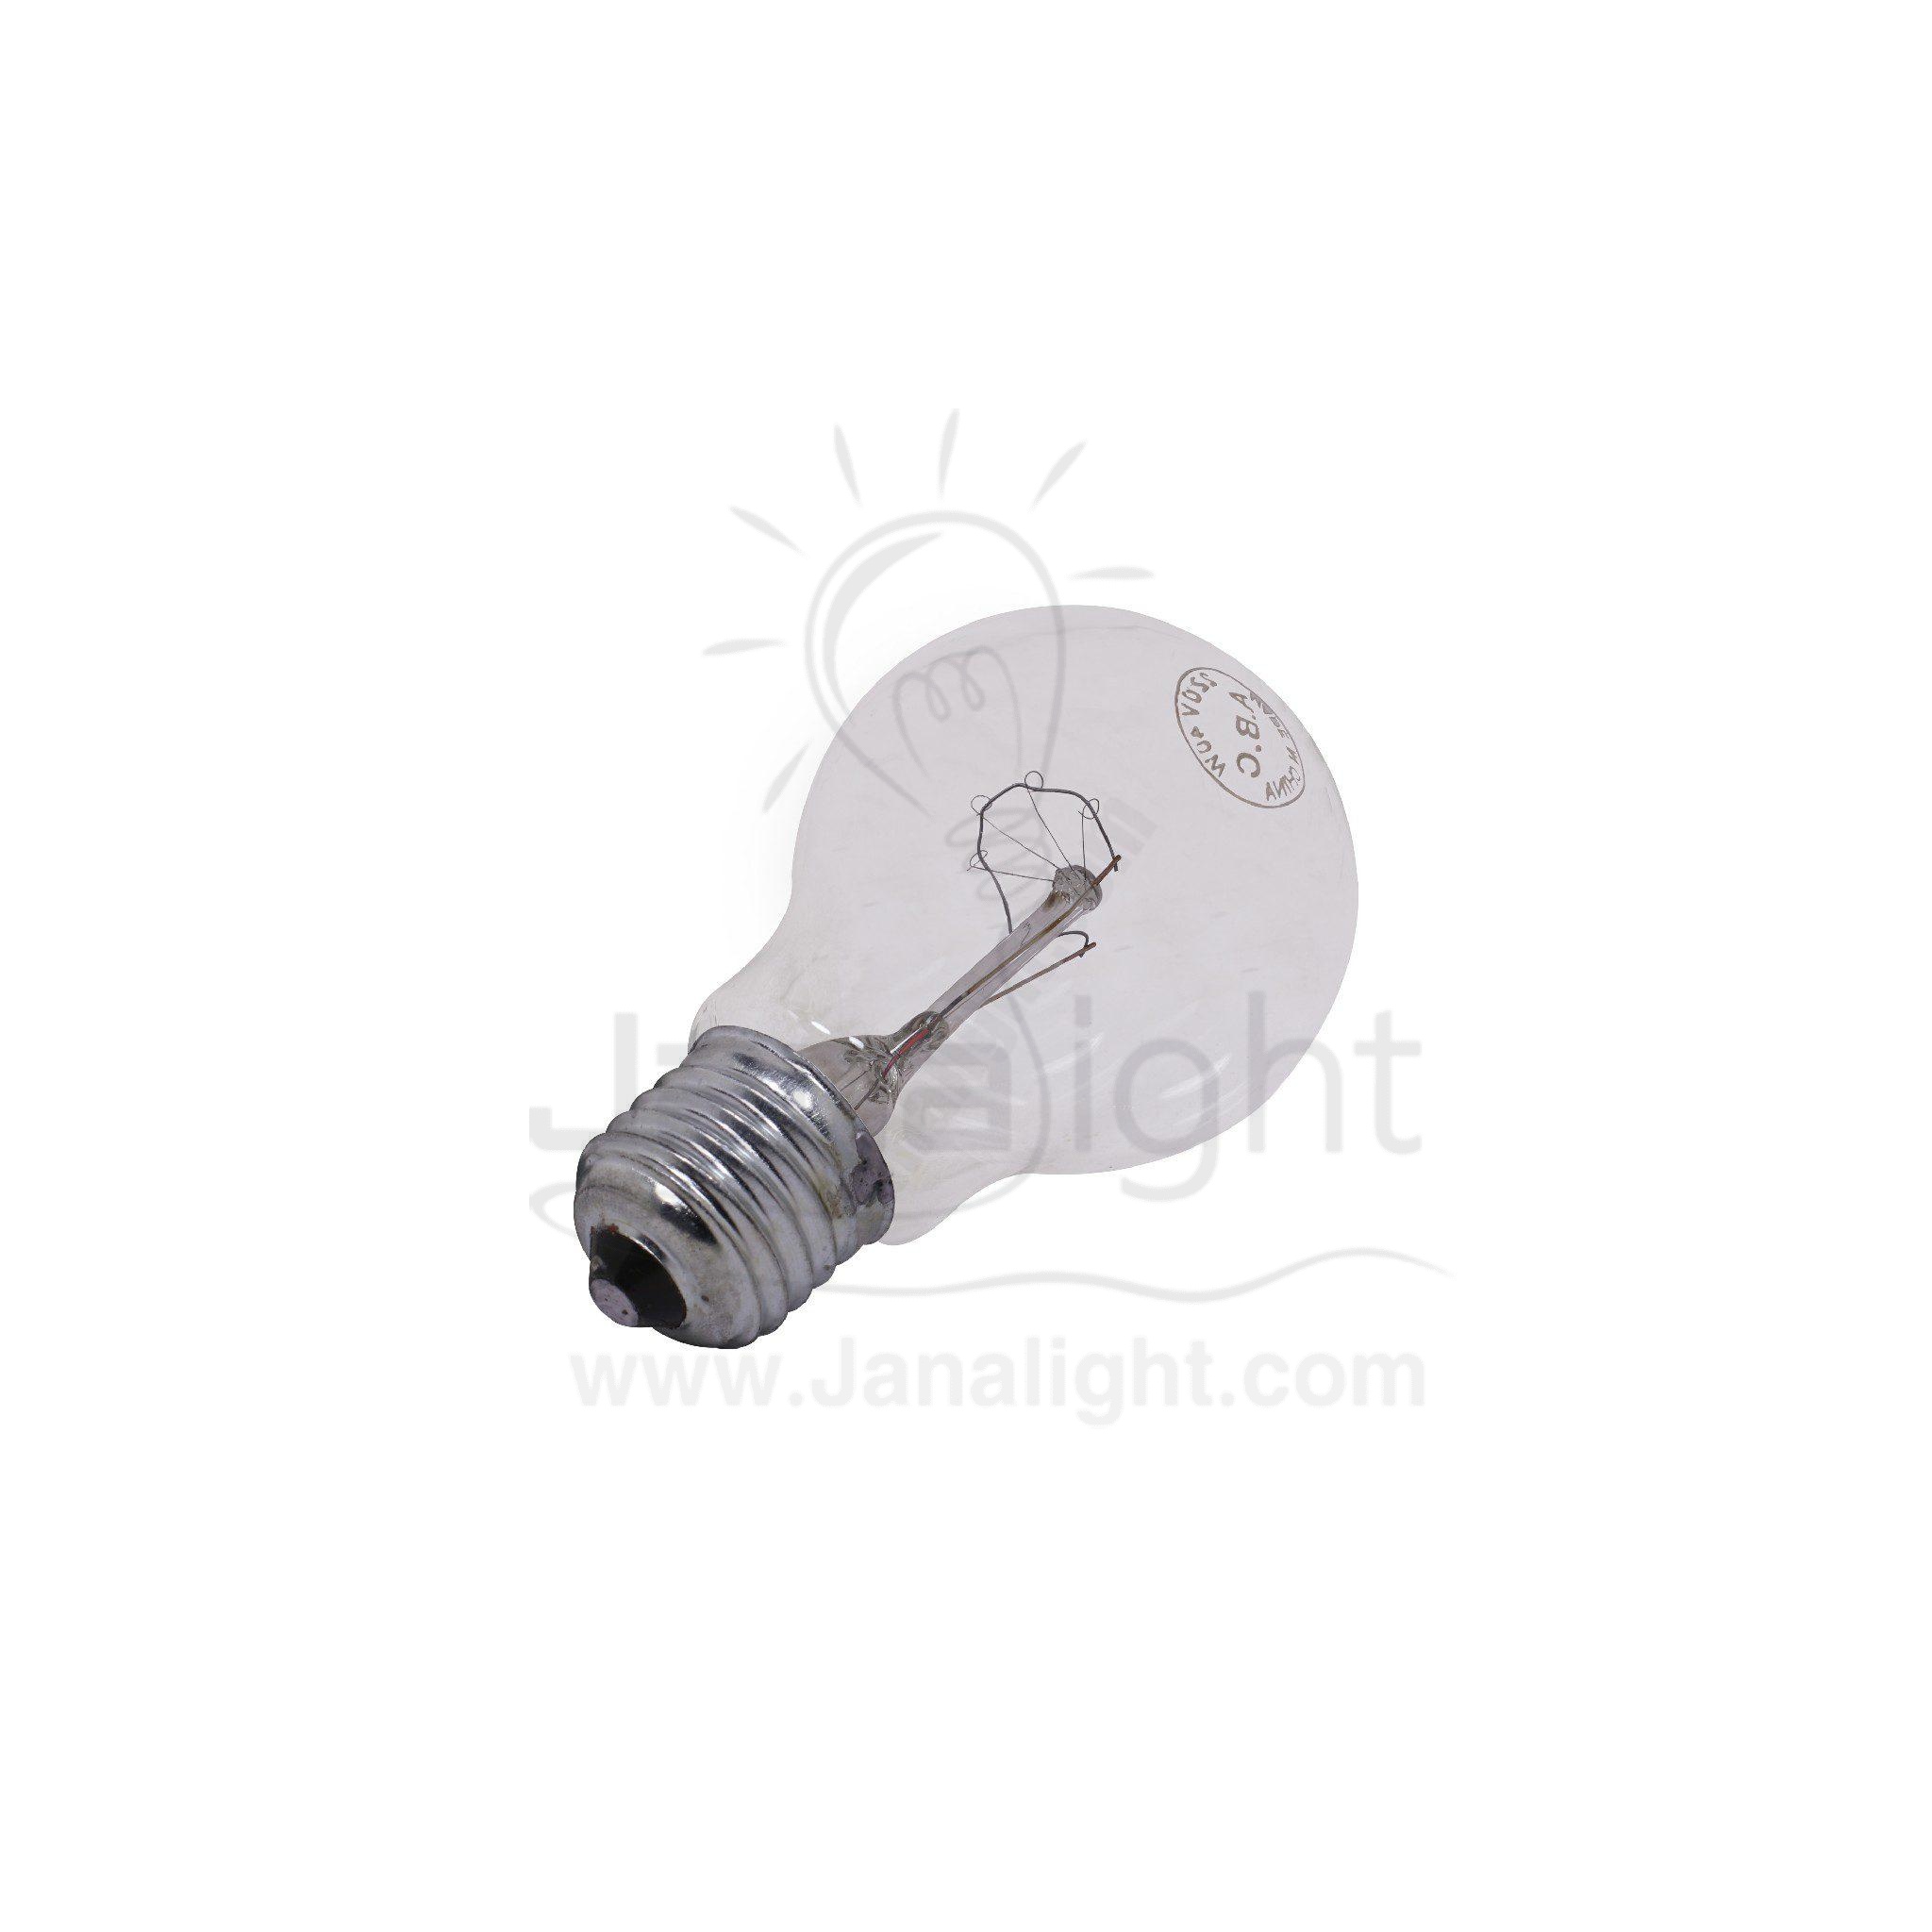 لمبة 100 وات شفاف هالوجين Nyaza Electric bulb 100 watt